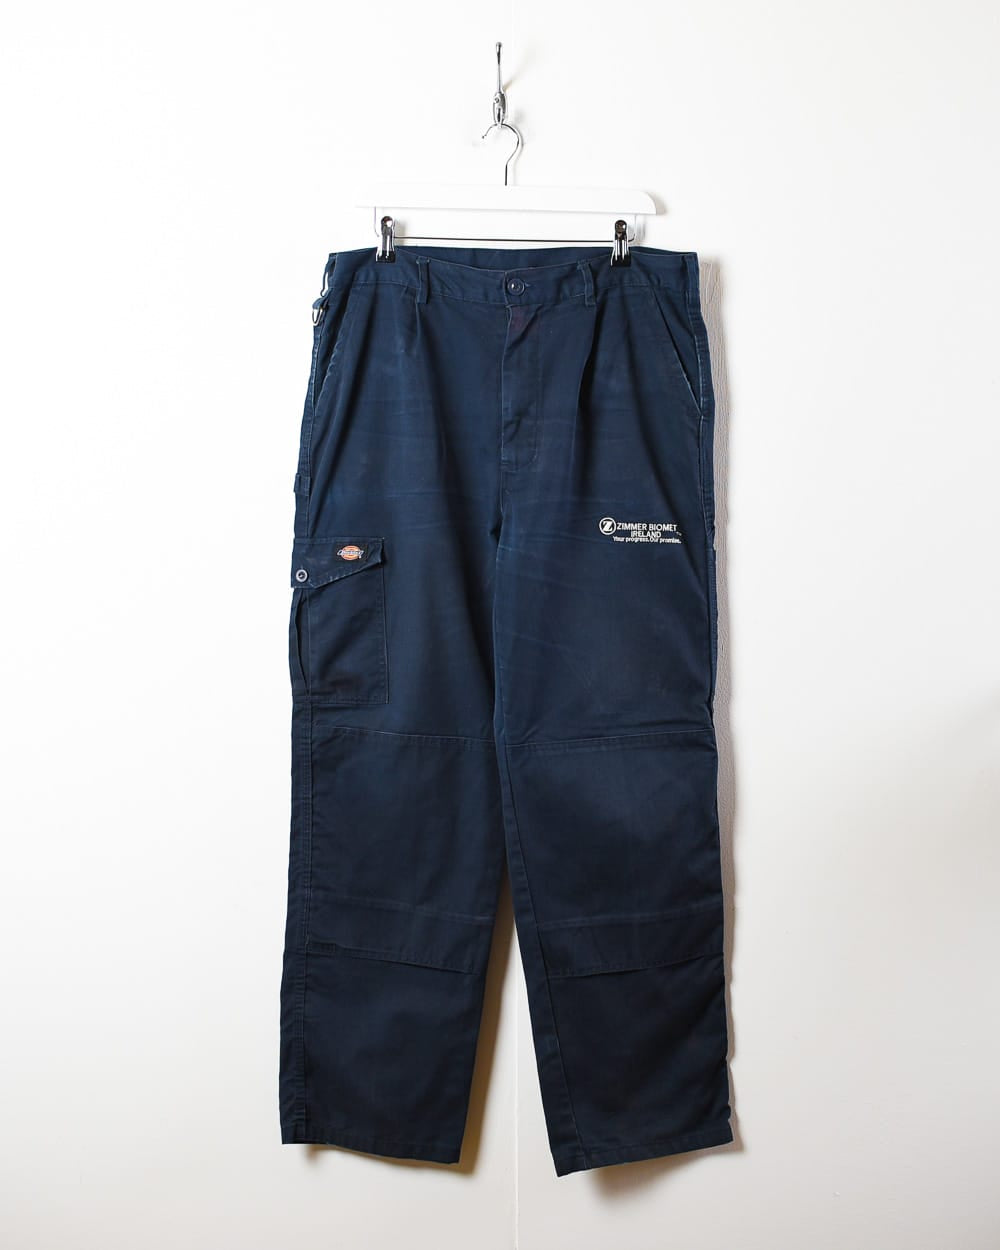 BabyBlue L.L.Bean Lined Jeans - W36 L29